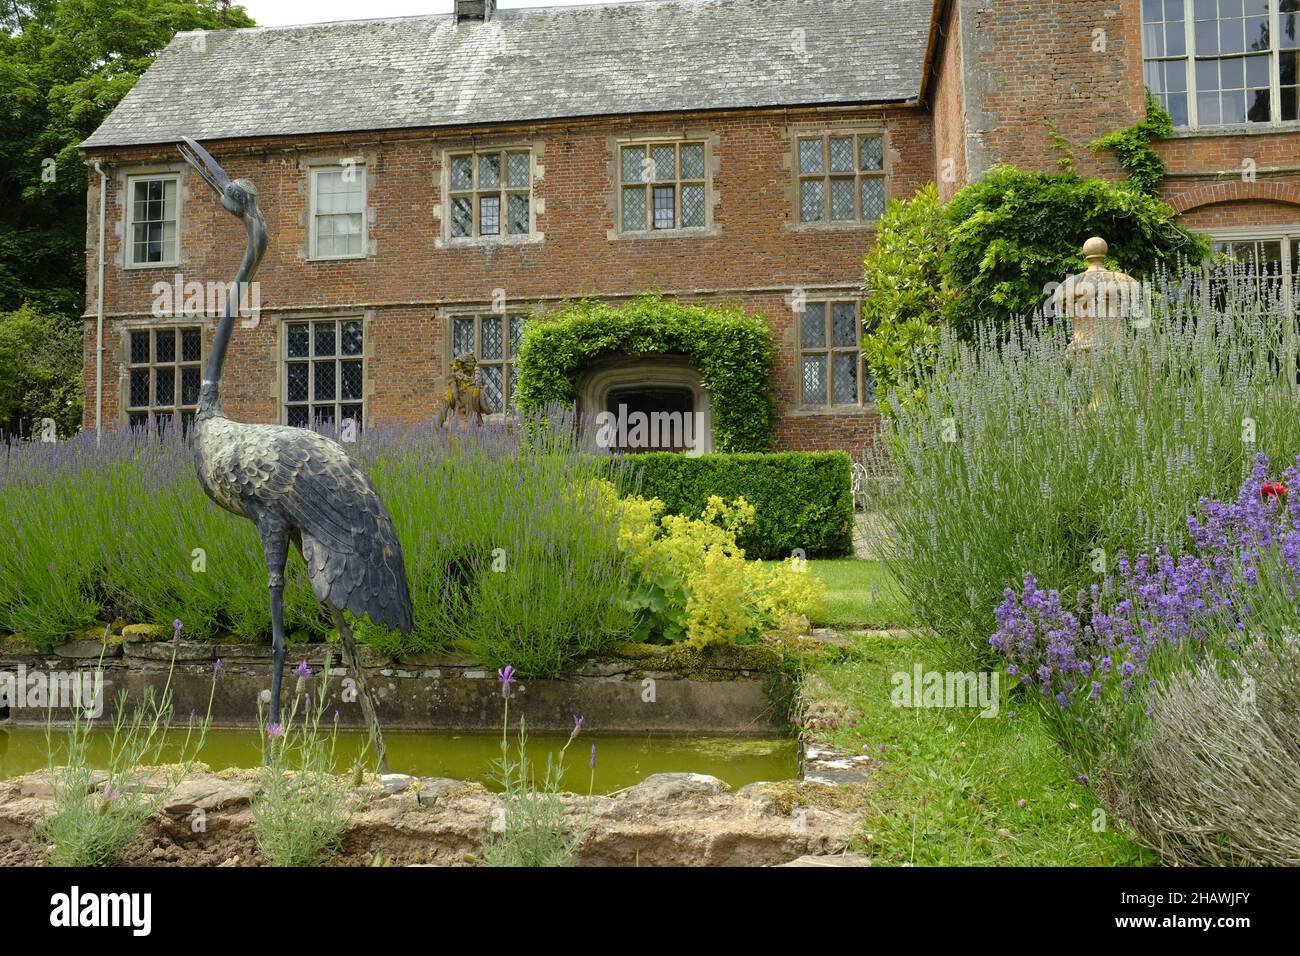 Escultura de un pájaro en los jardines frente a la histórica Hellens House, Mucho Marke, Herts, Reino Unido Foto de stock